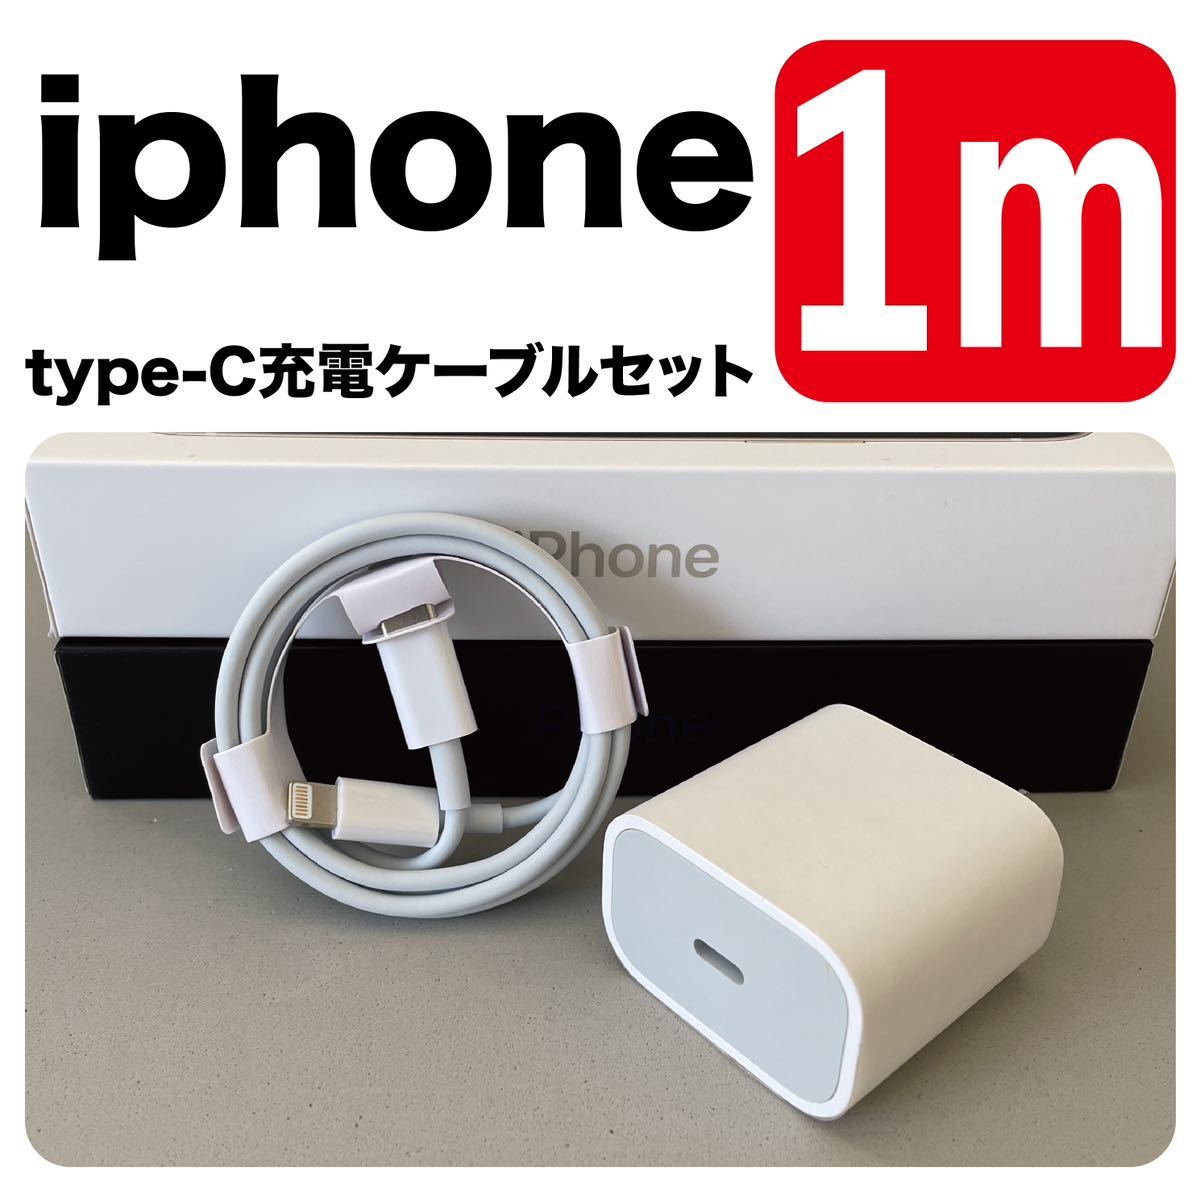 iPhone ケーブル 充電器 ライトニングケーブル アップル 純正品質 USB